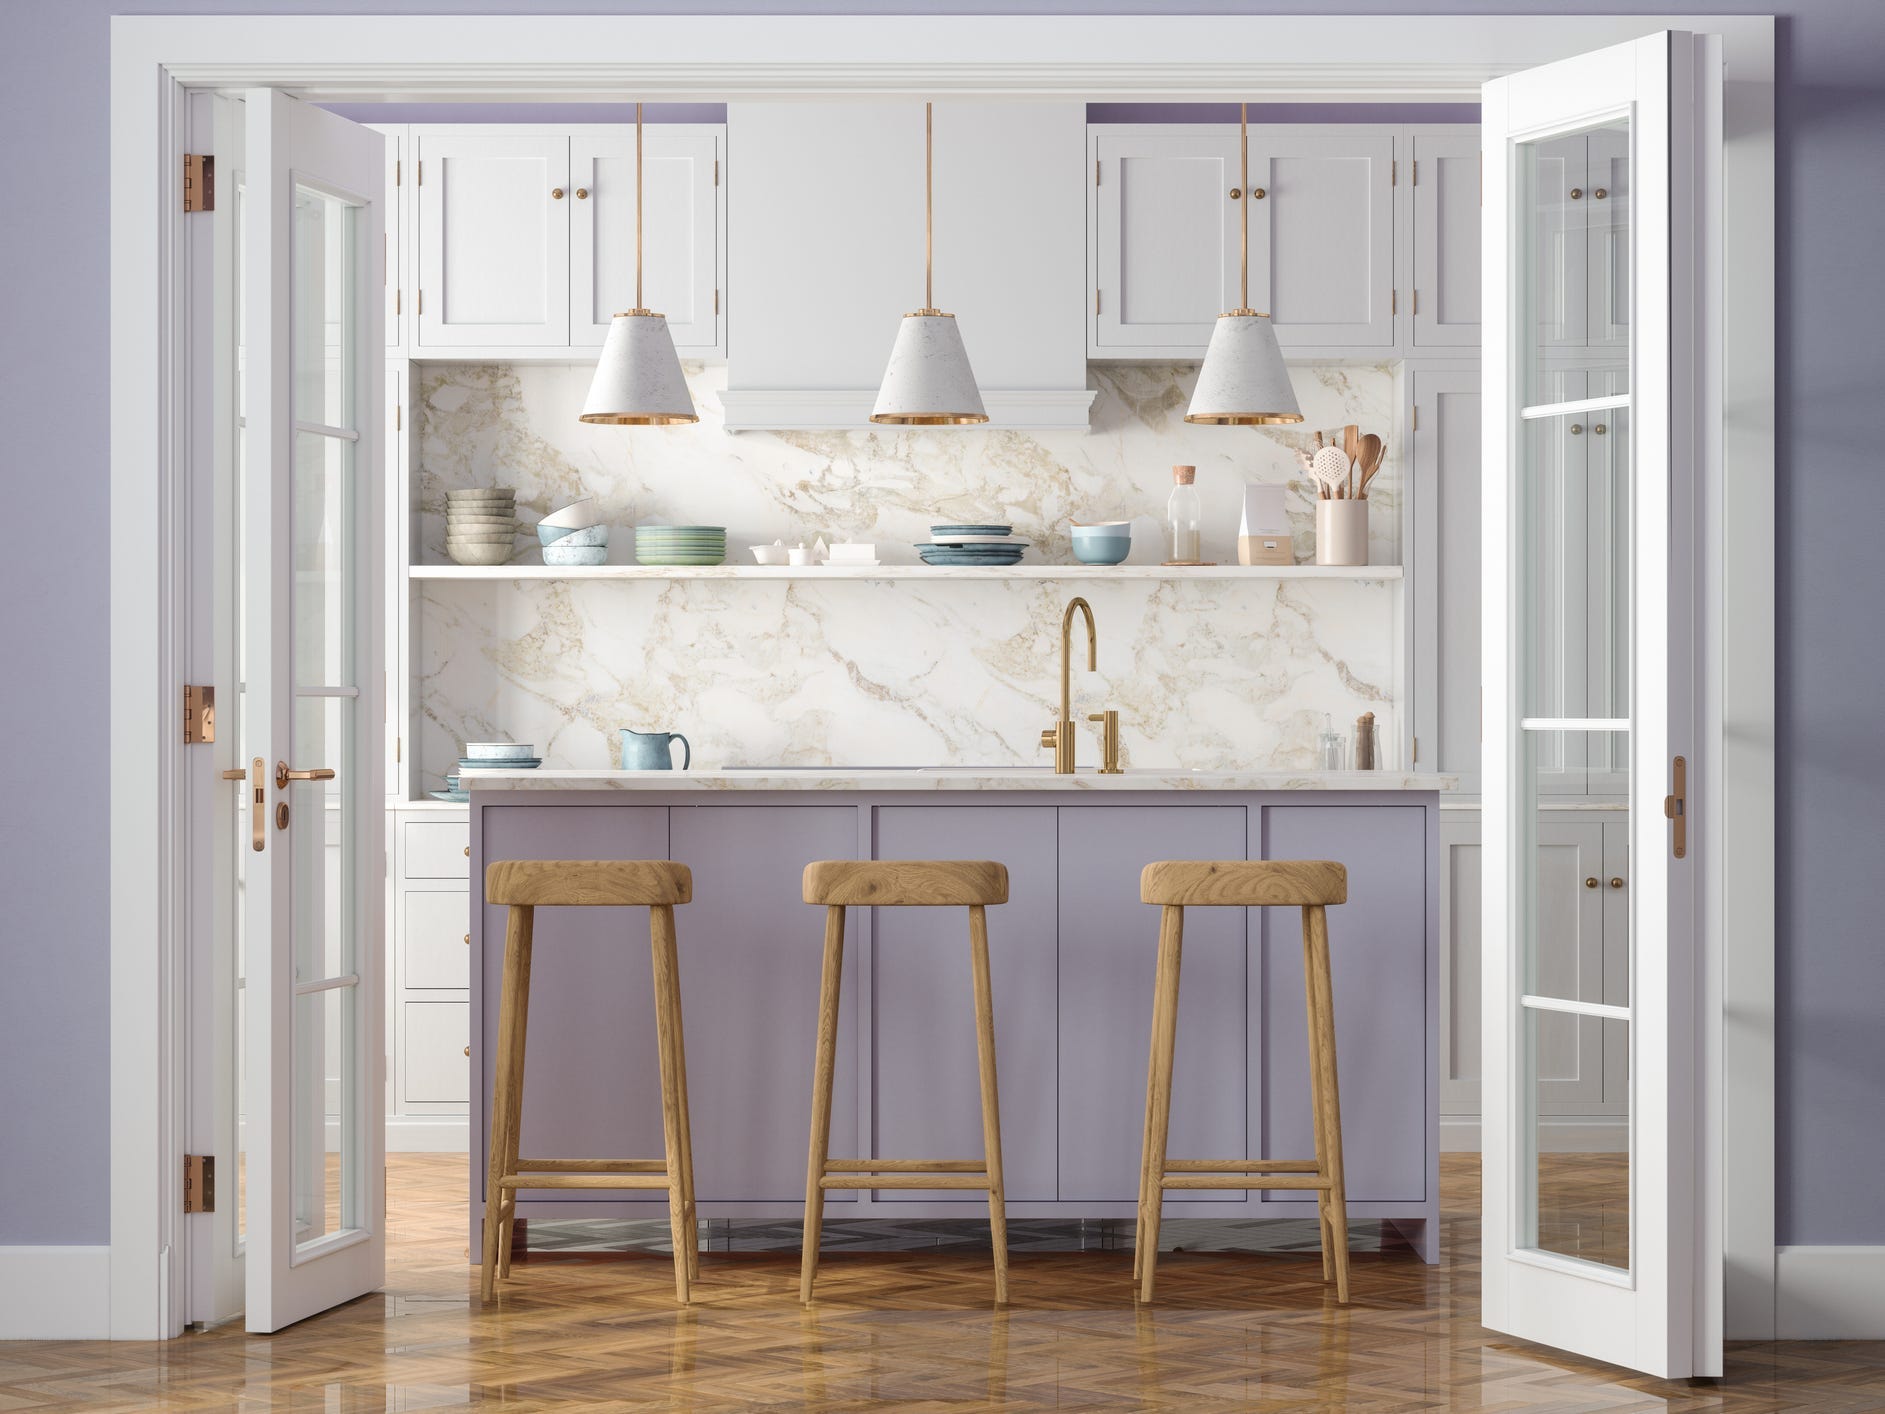 Eine lavendelfarbene Kücheninsel mit drei Barhockern in einer Küche mit Marmorrückwand.  Im Vordergrund sind zwei französische Türen und eine lavendelfarbene Wand abgebildet